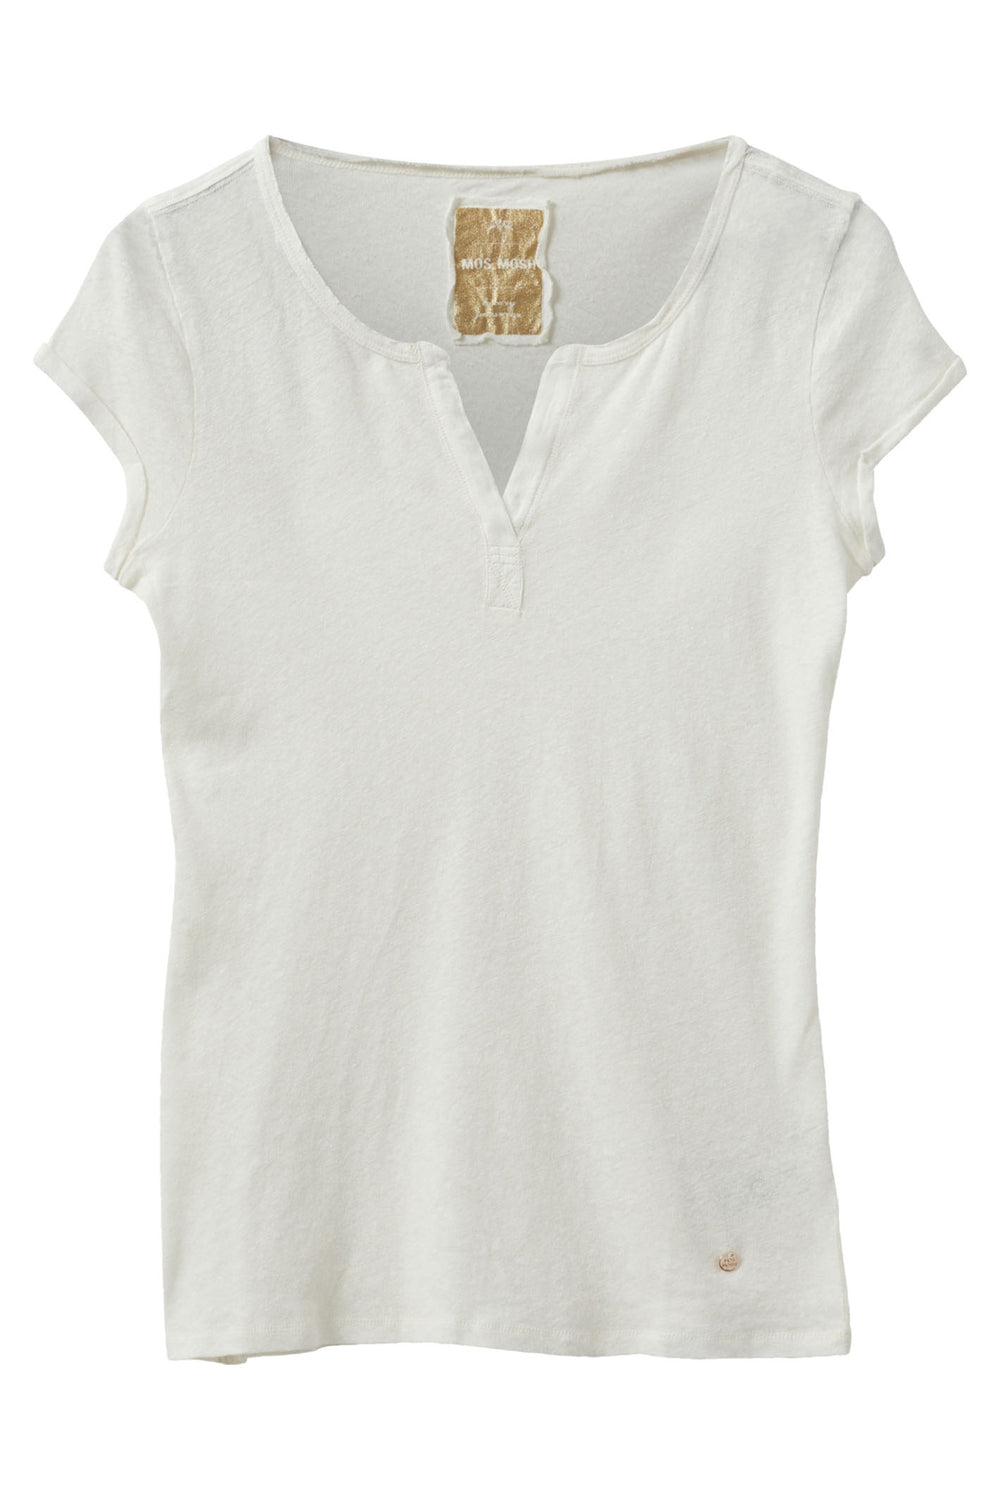 Mos Mosh 133020 MMTroy Ecru Cream Linen Blend Roll Sleeve T-Shirt - Dotique